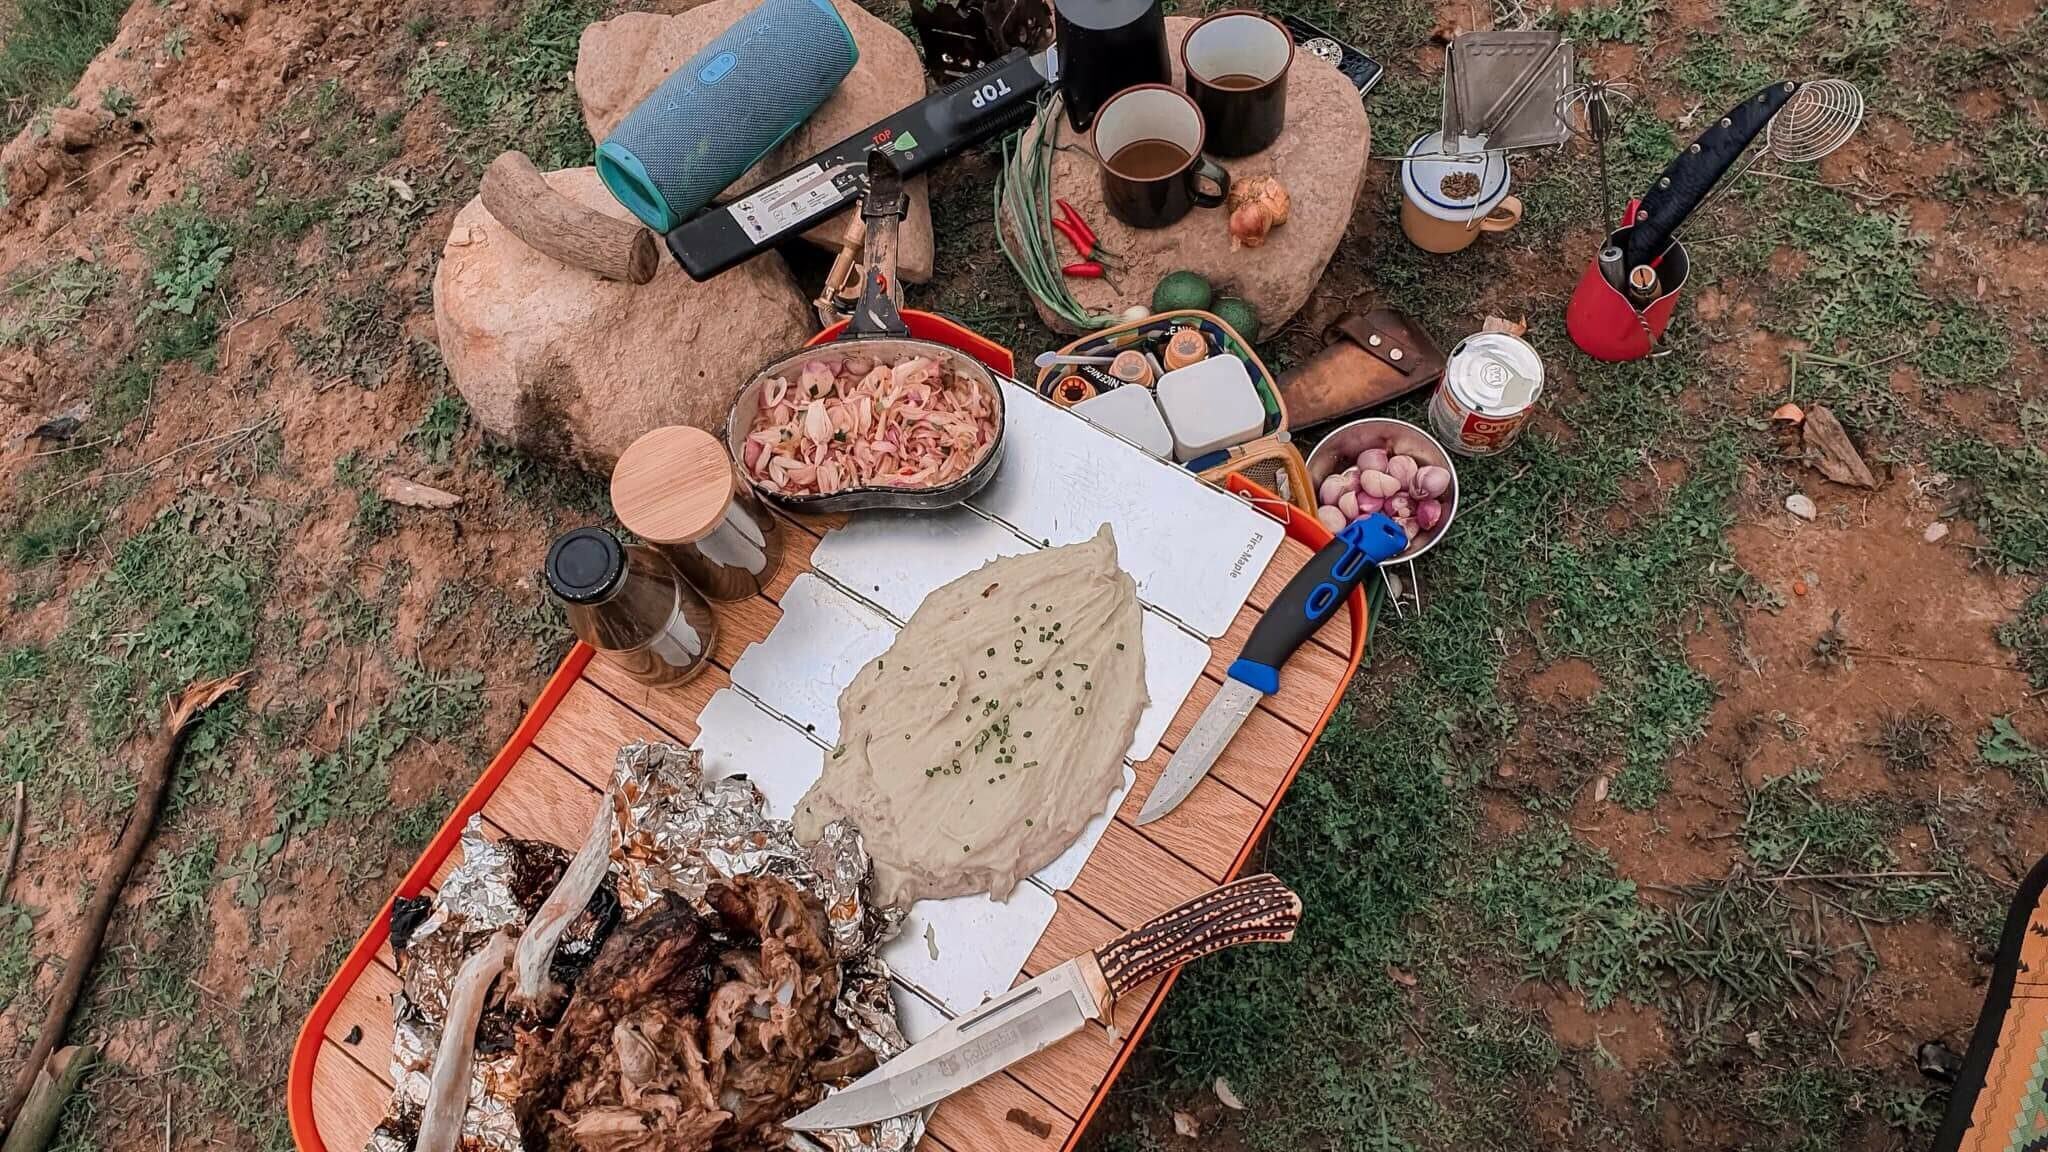 Bữa ăn đậm chất camping được Huy cùng nhóm bạn chuẩn bị - Nguồn ảnh: FB Huy Quang Đỗ